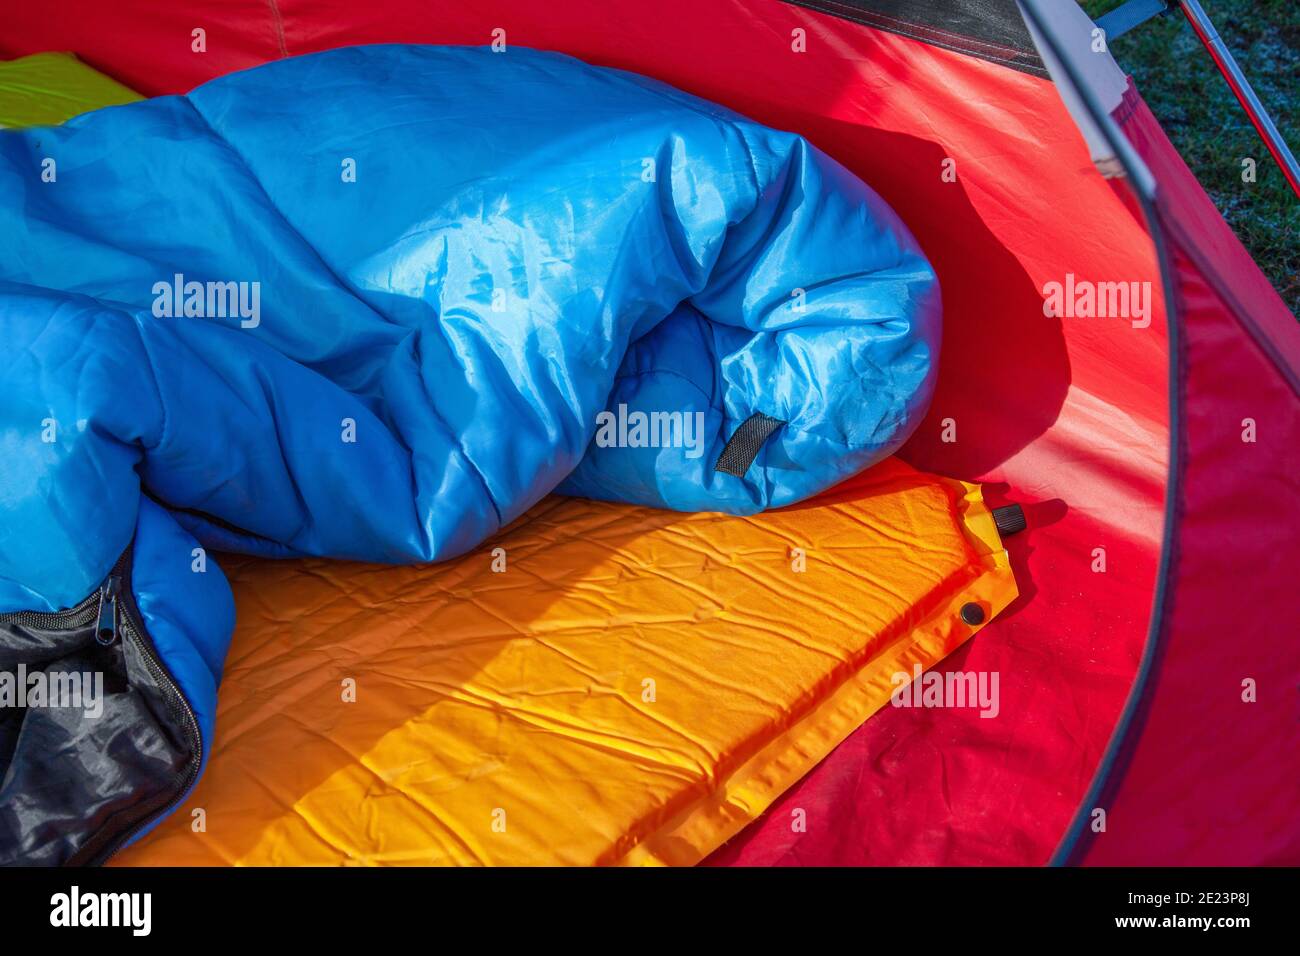 L'intérieur d'une tente rouge avec un sommeil bleu sac et coussin de matelas orange auto-gonflant pour dessous son sac de couchage Banque D'Images